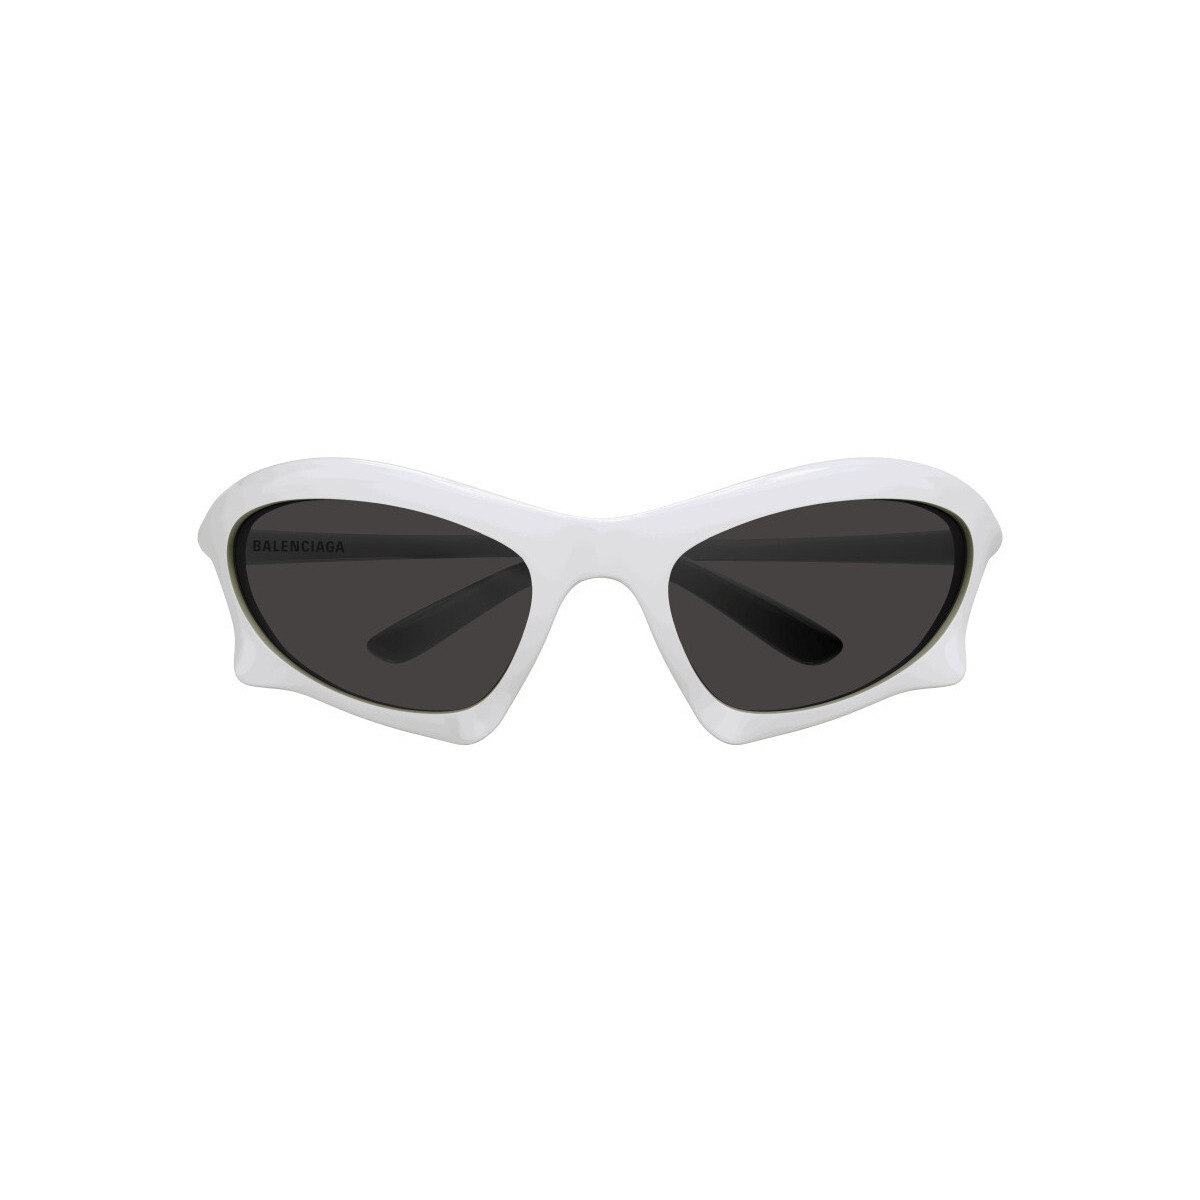 Orologi & Gioielli Occhiali da sole Balenciaga BB0229S Occhiali da sole, Bianco/Grigio, 59 mm Bianco